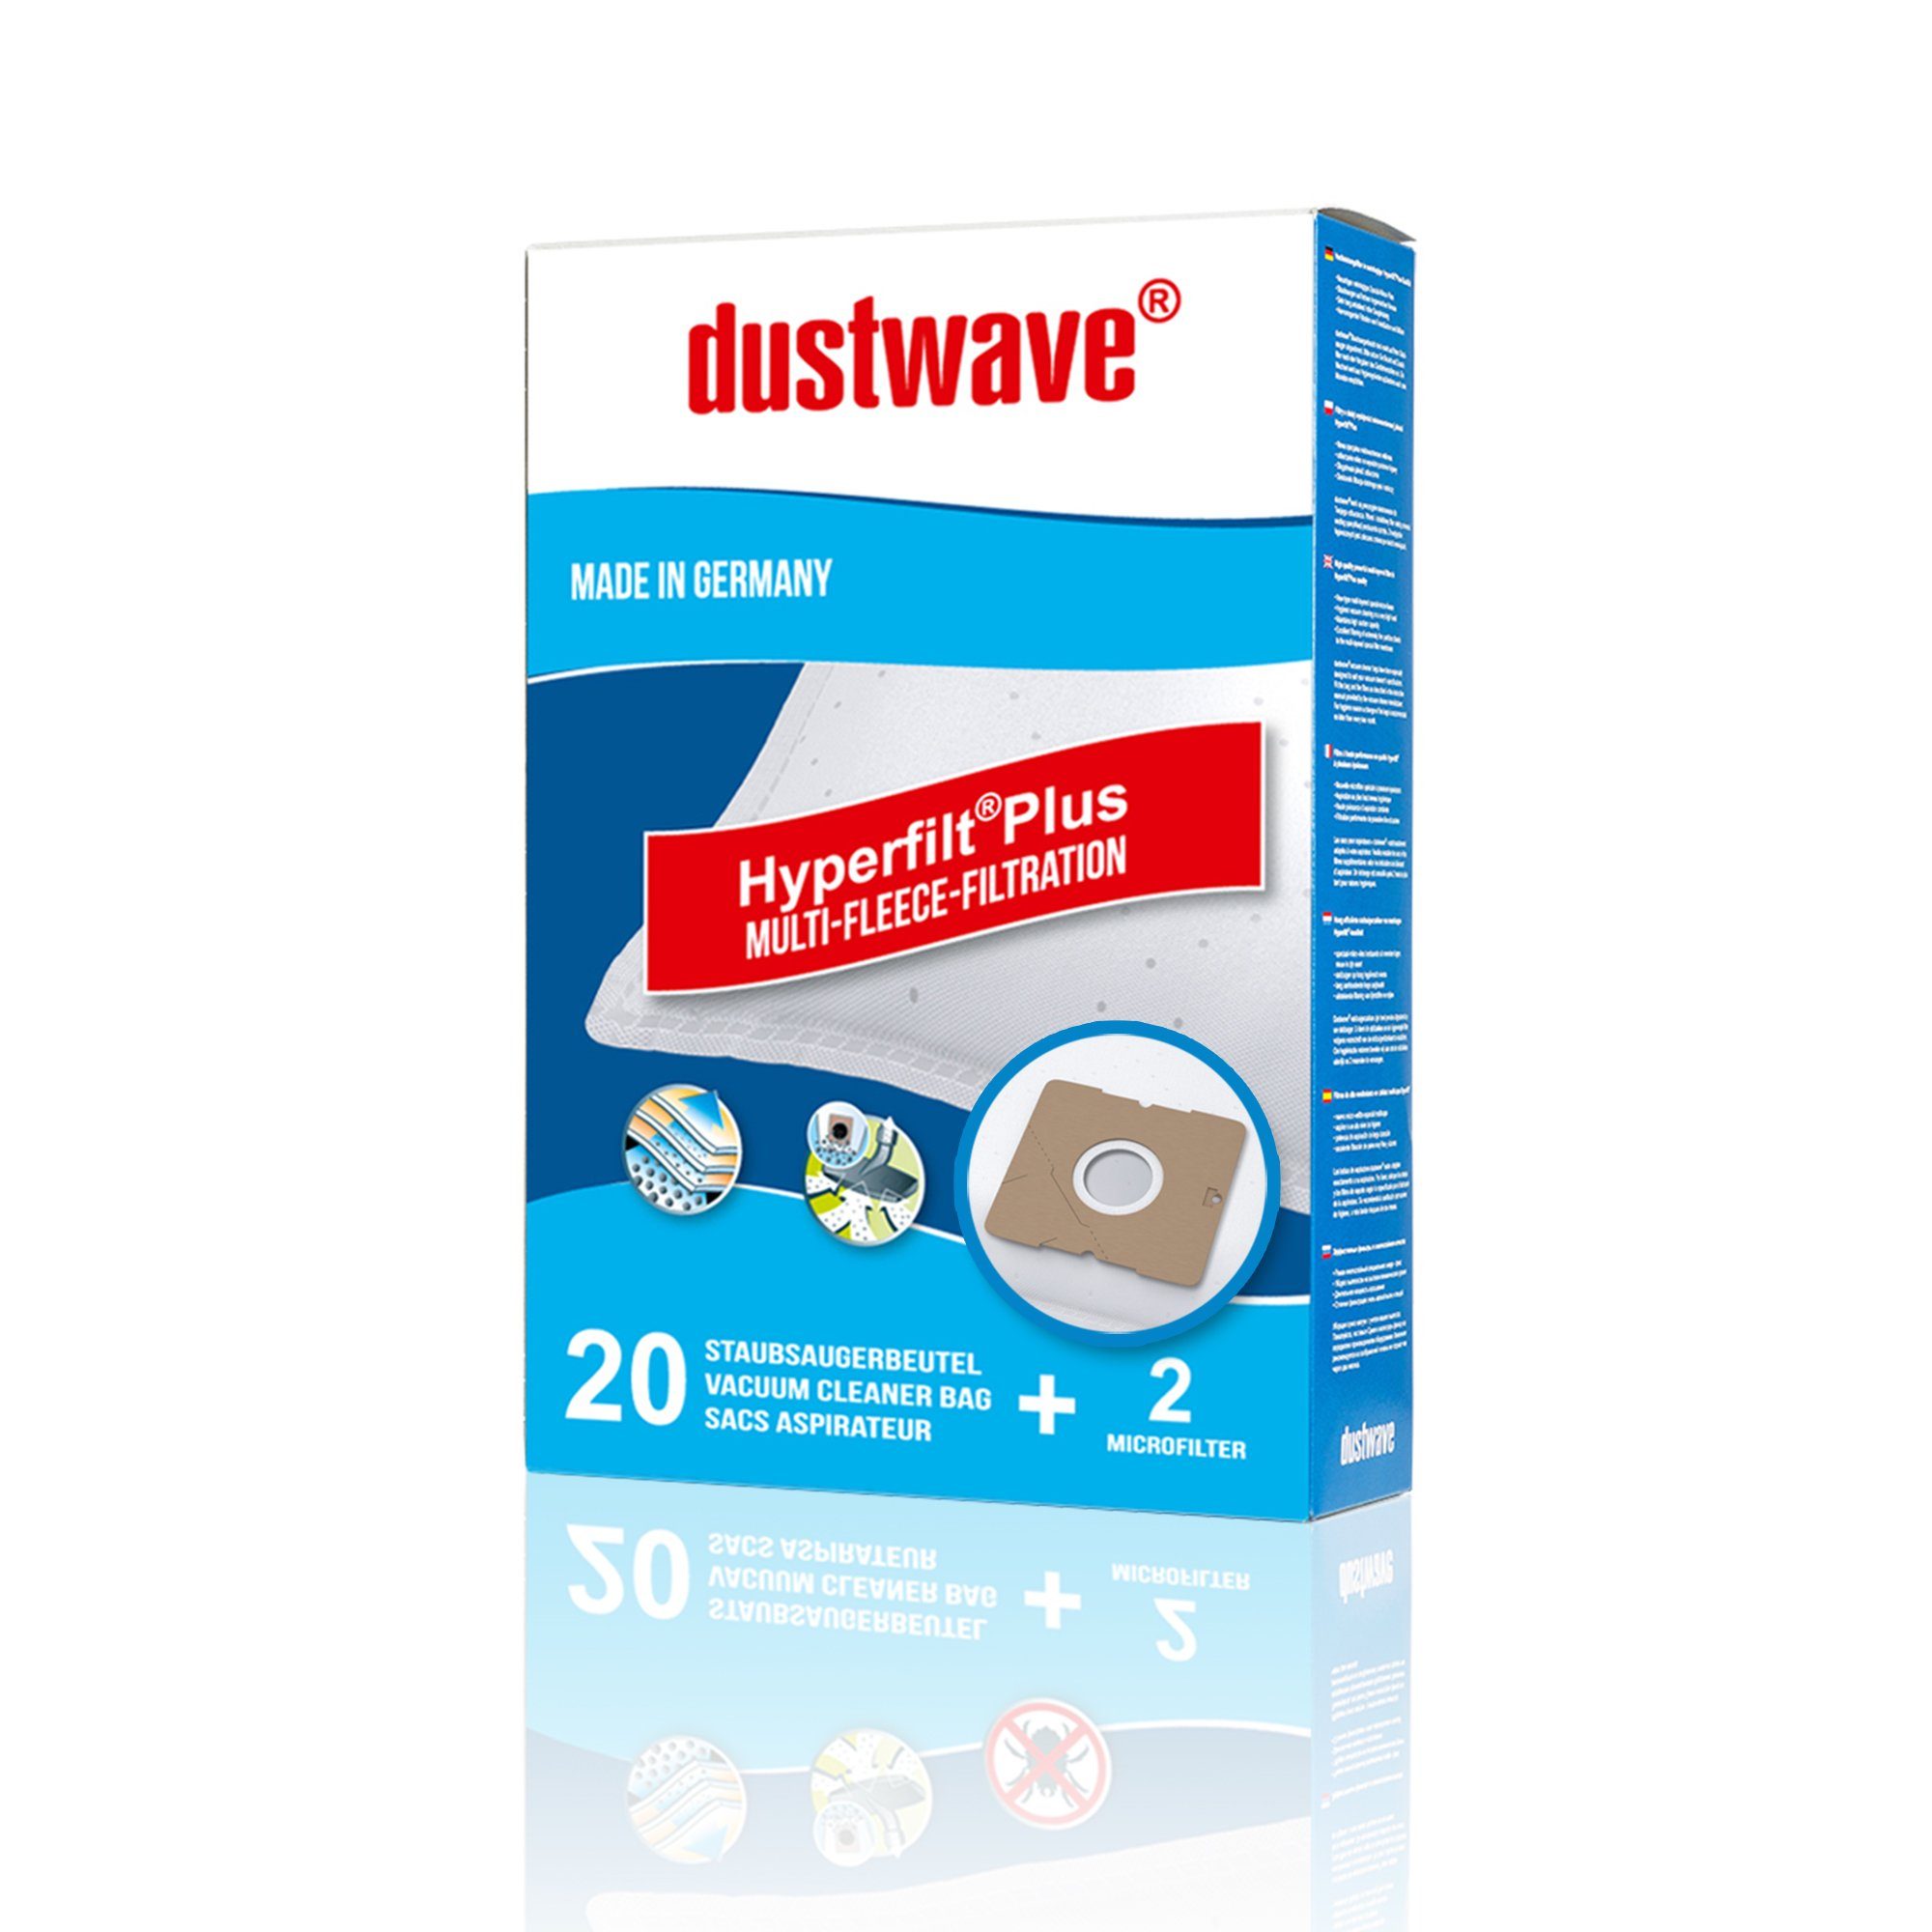 Dustwave Staubsaugerbeutel Megapack, passend für AmazonBasics 15C, 20 St., Megapack, 20 Staubsaugerbeutel + 2 Hepa-Filter (ca. 15x15cm - zuschneidbar) AmazonBasics 15C - Premium